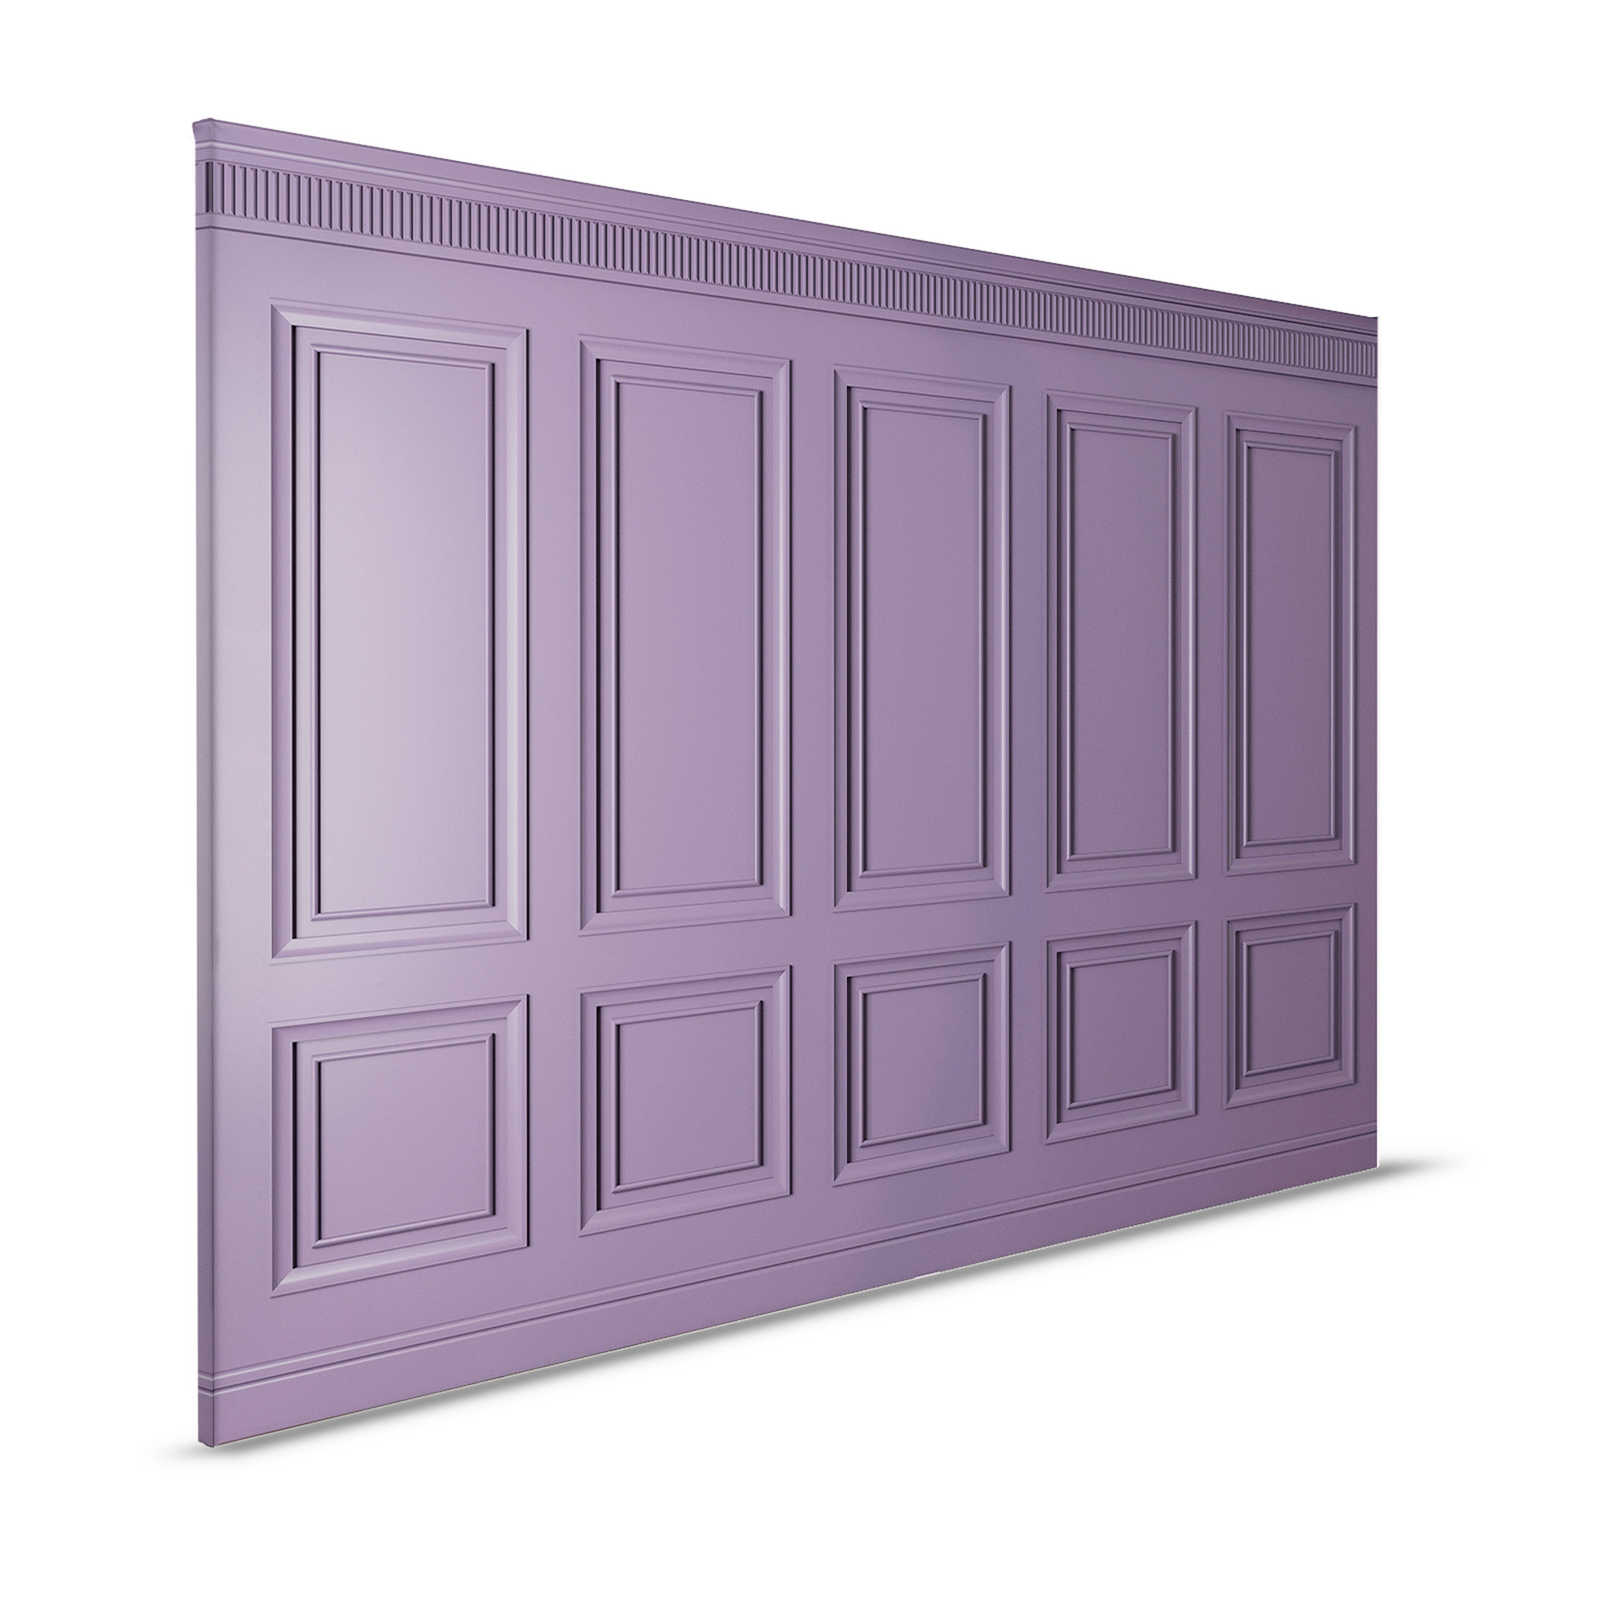 Kensington 3 - Quadro 3D in legno viola scuro, viola - 1,20 m x 0,80 m
